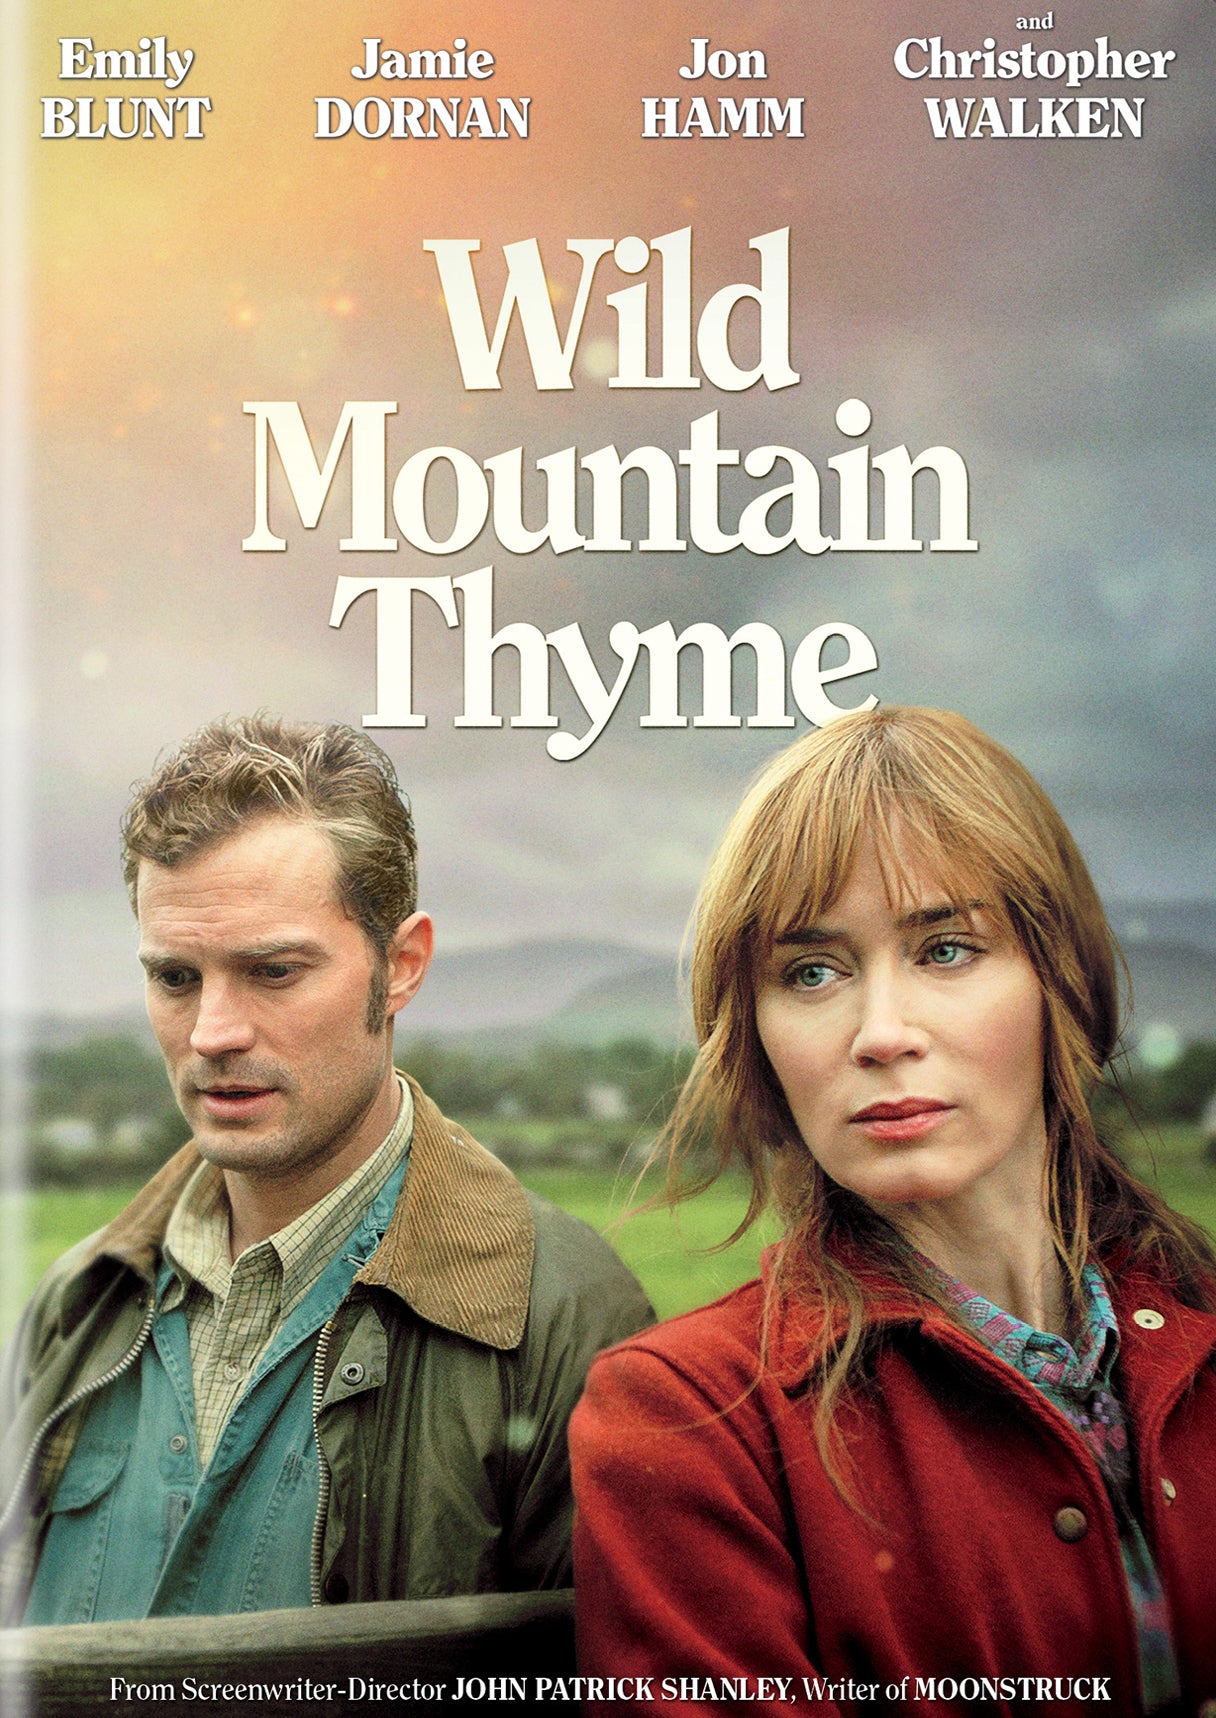 Wild Mountain Thyme cover art